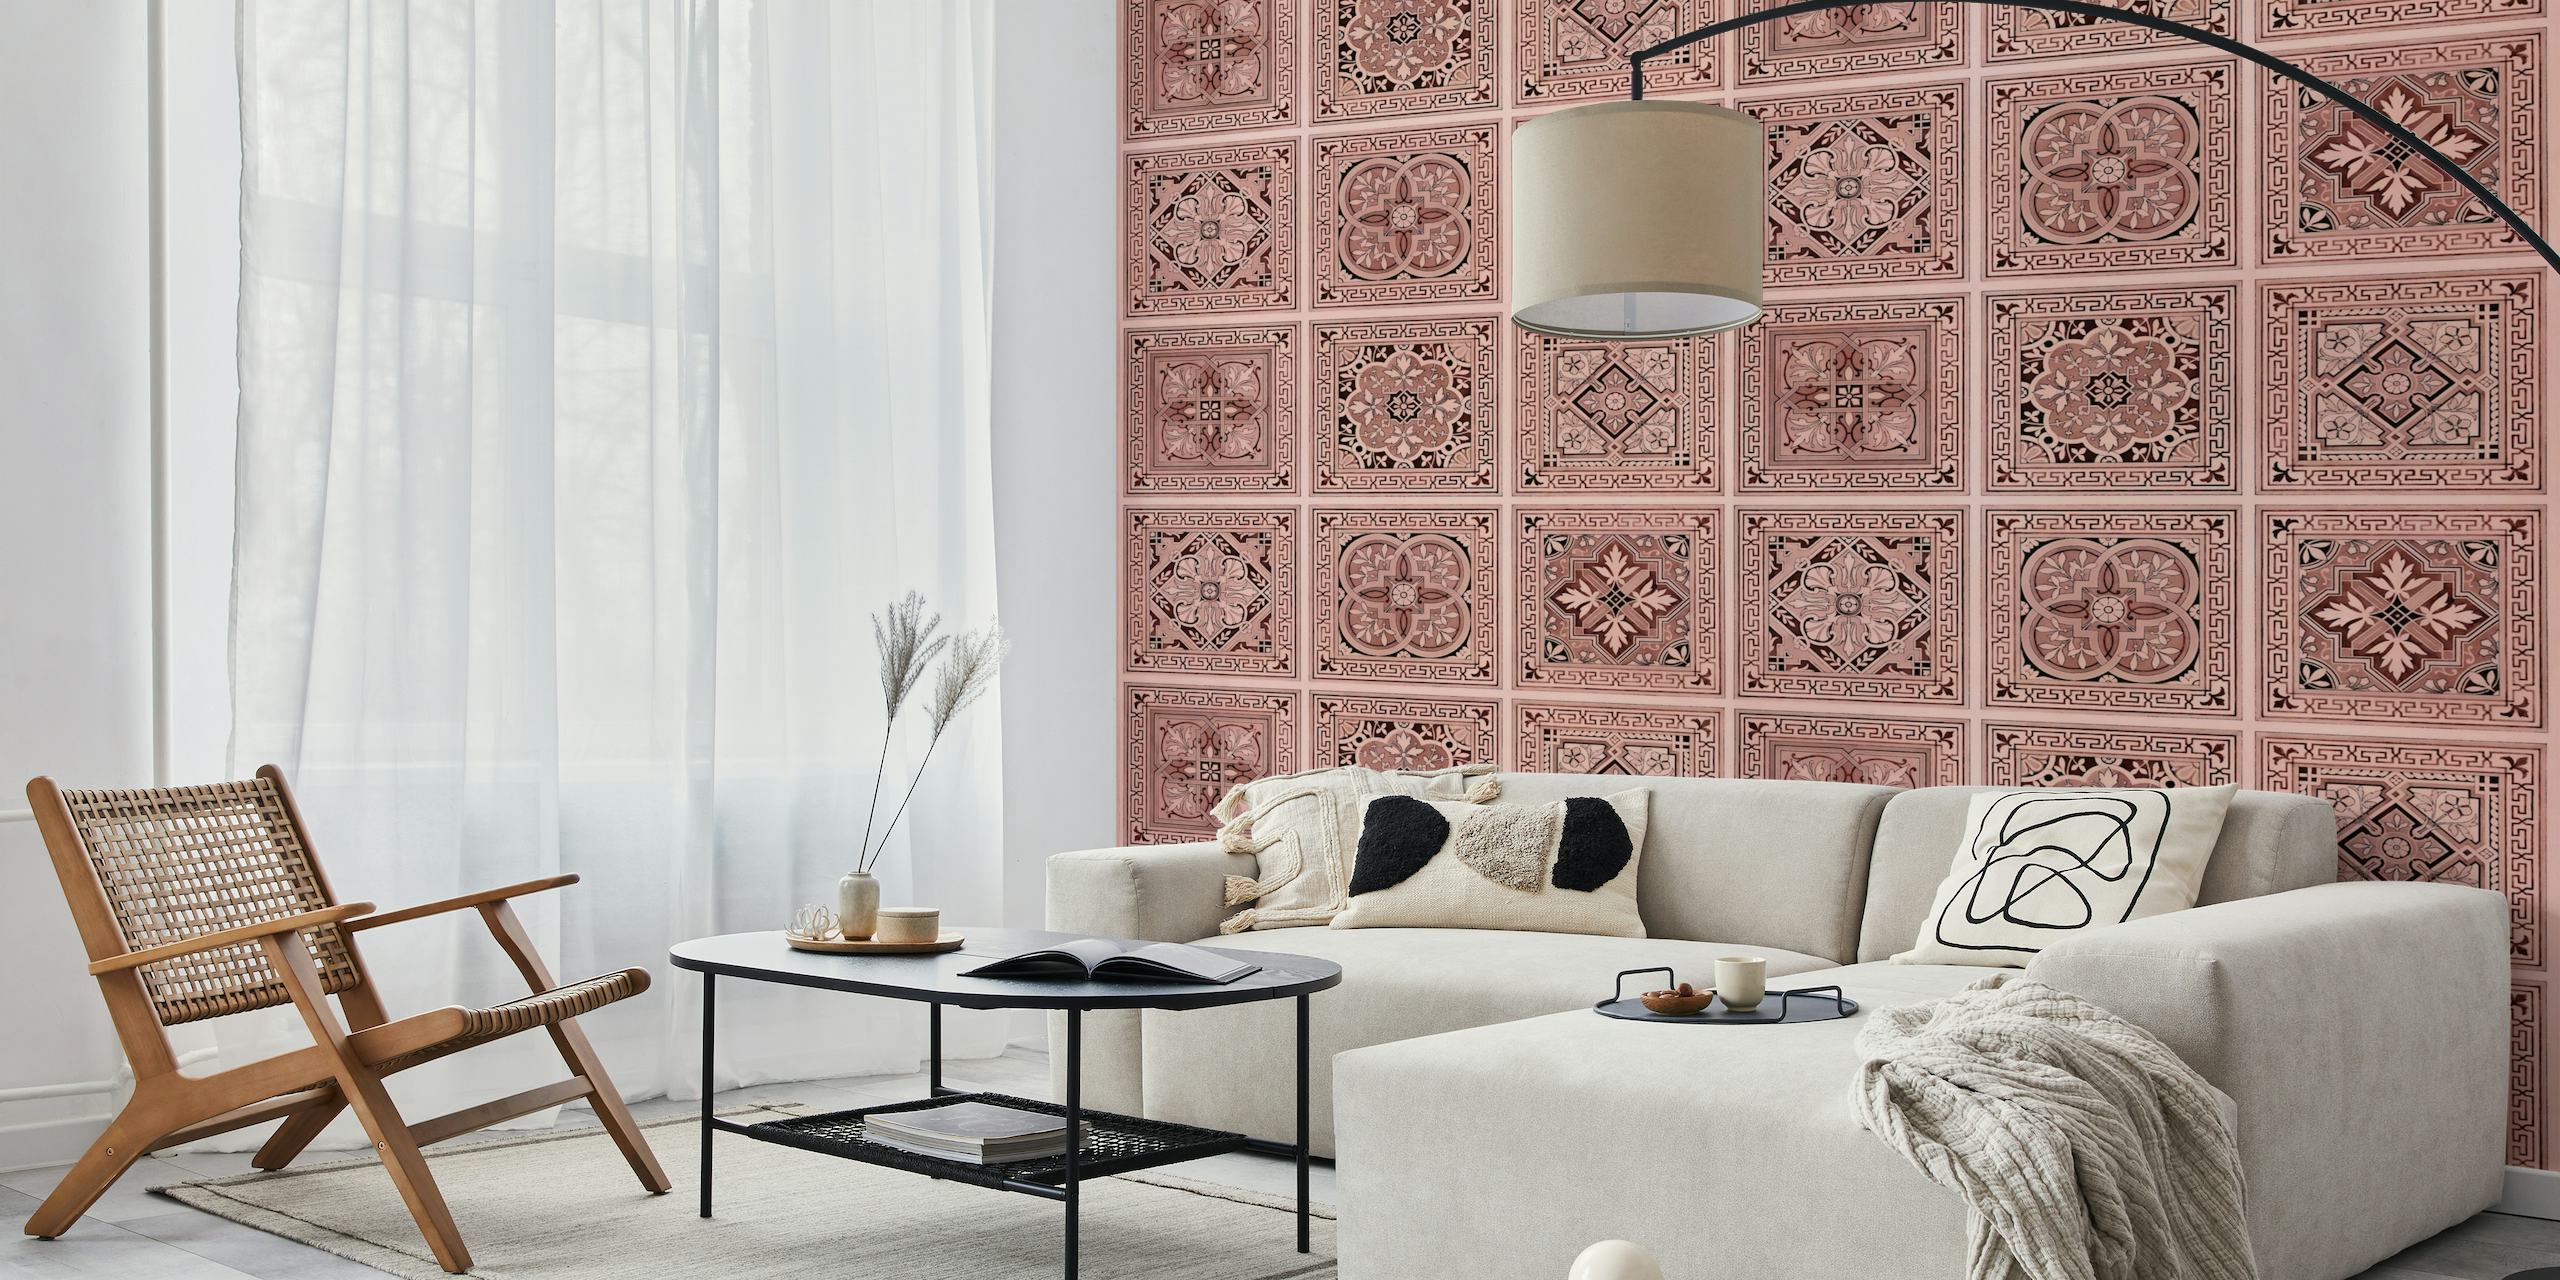 Zidna slika s uzorkom pločica u boji boje s raskošnim cvjetnim motivima, savršena za uređenje doma.